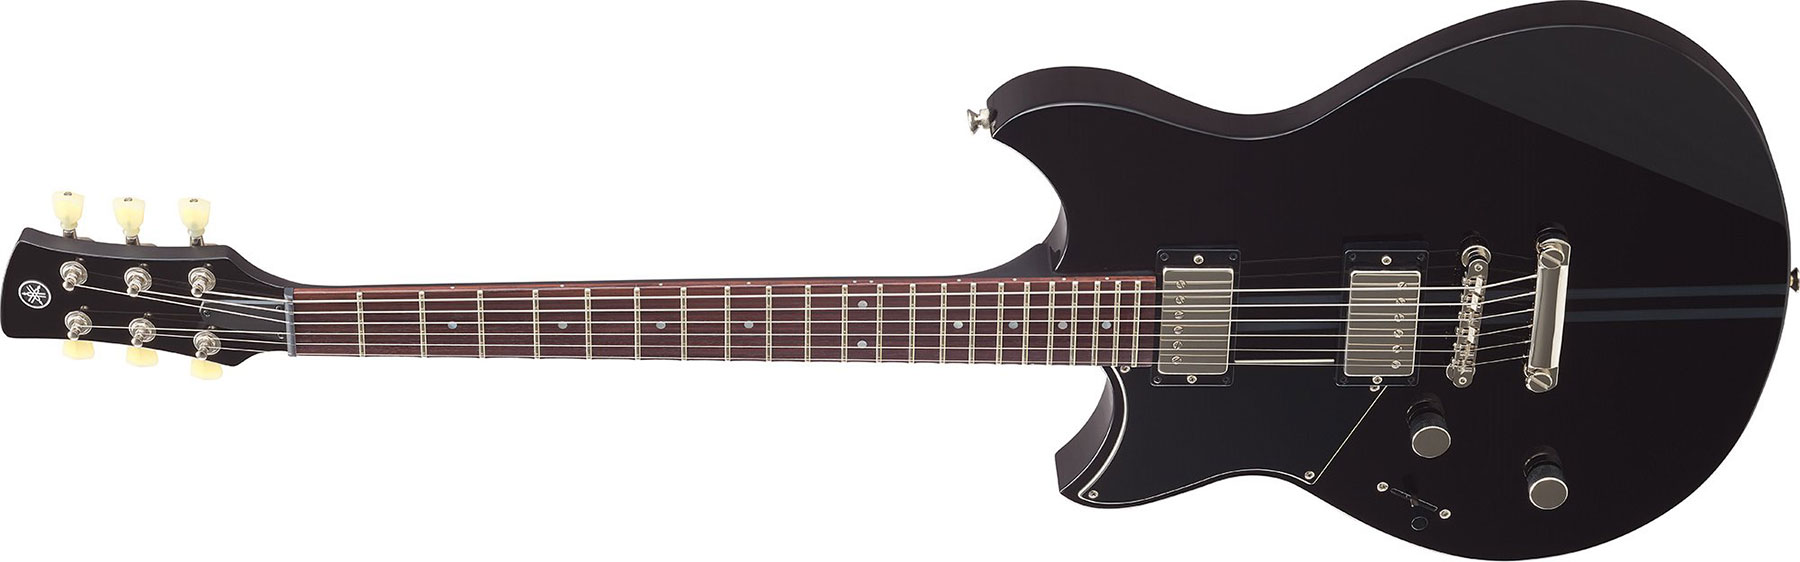 Yamaha Rse20l Revstar Element Lh Gaucher Hh Ht Rw - Black - Guitarra electrica para zurdos - Variation 1